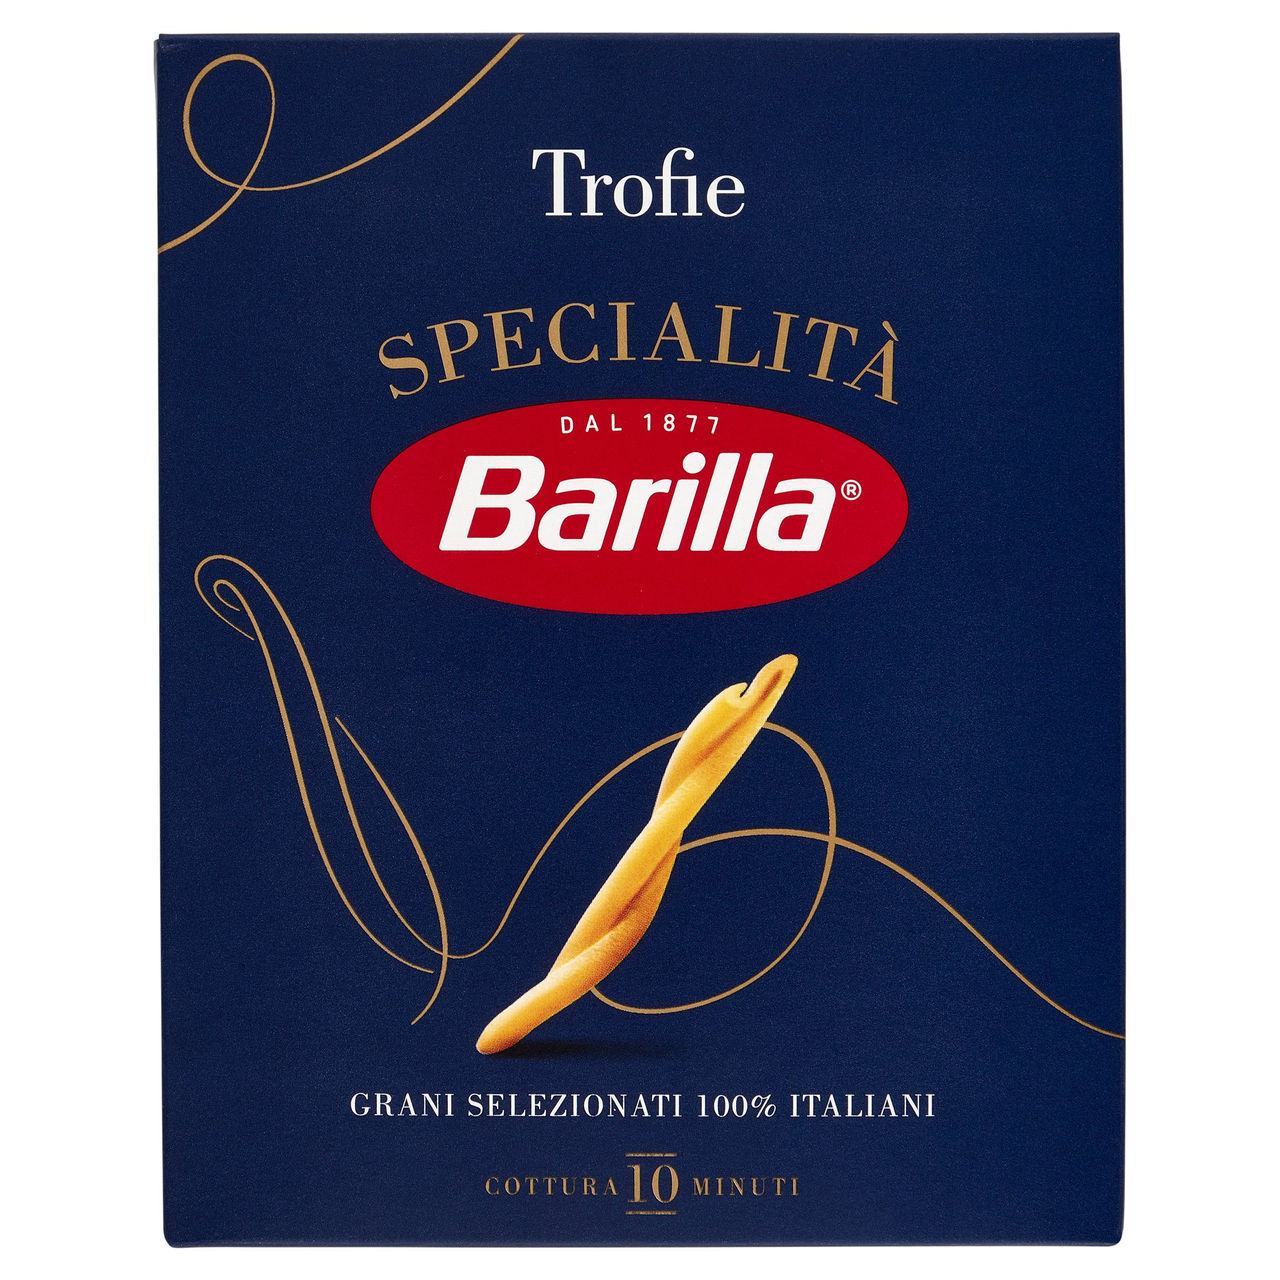 Barilla Specialità Trofie 500g in vendita online